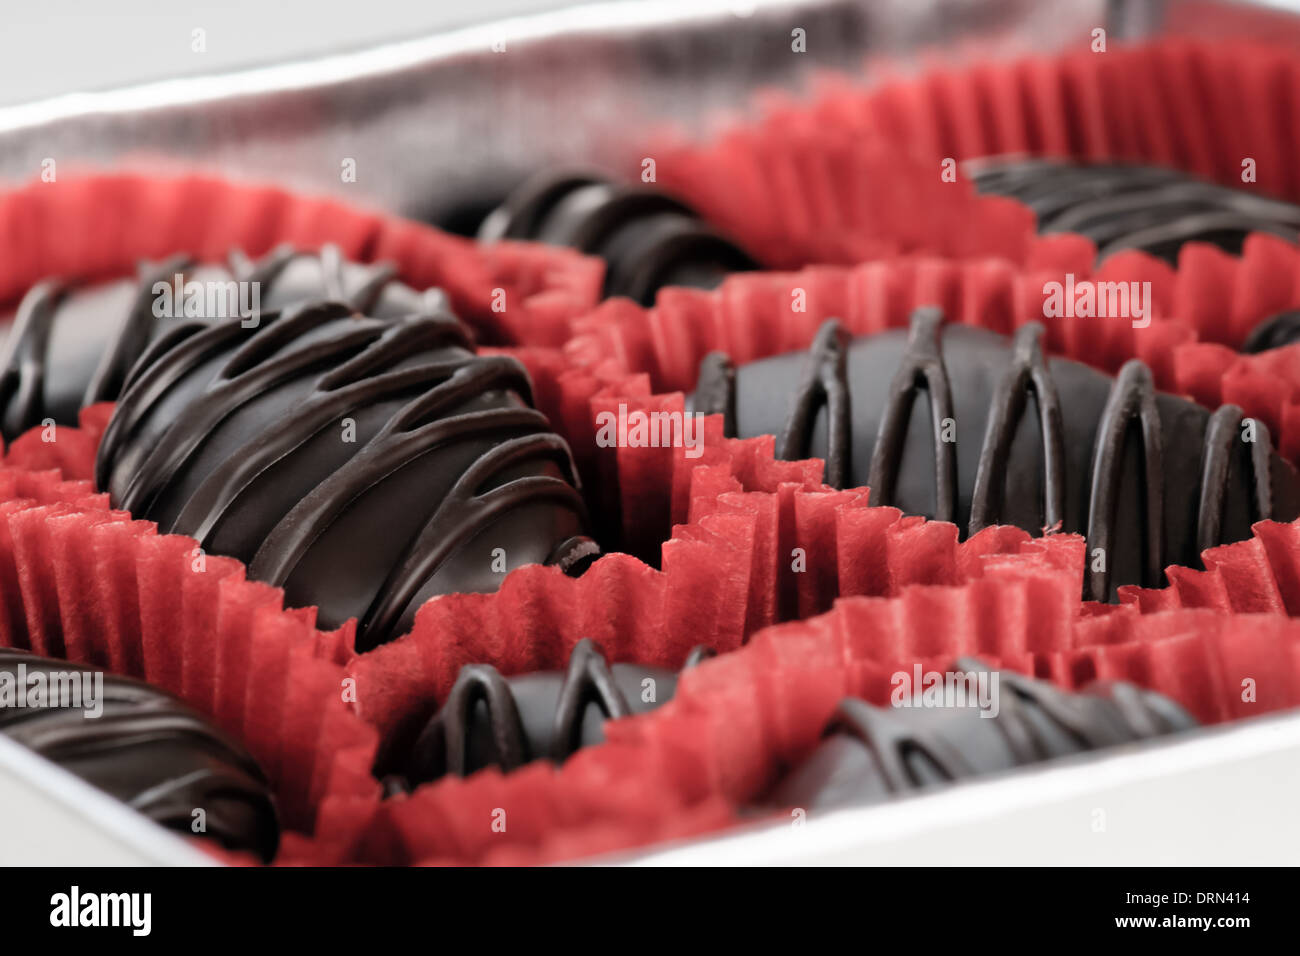 Confezione regalo di cioccolatini scuro Foto Stock